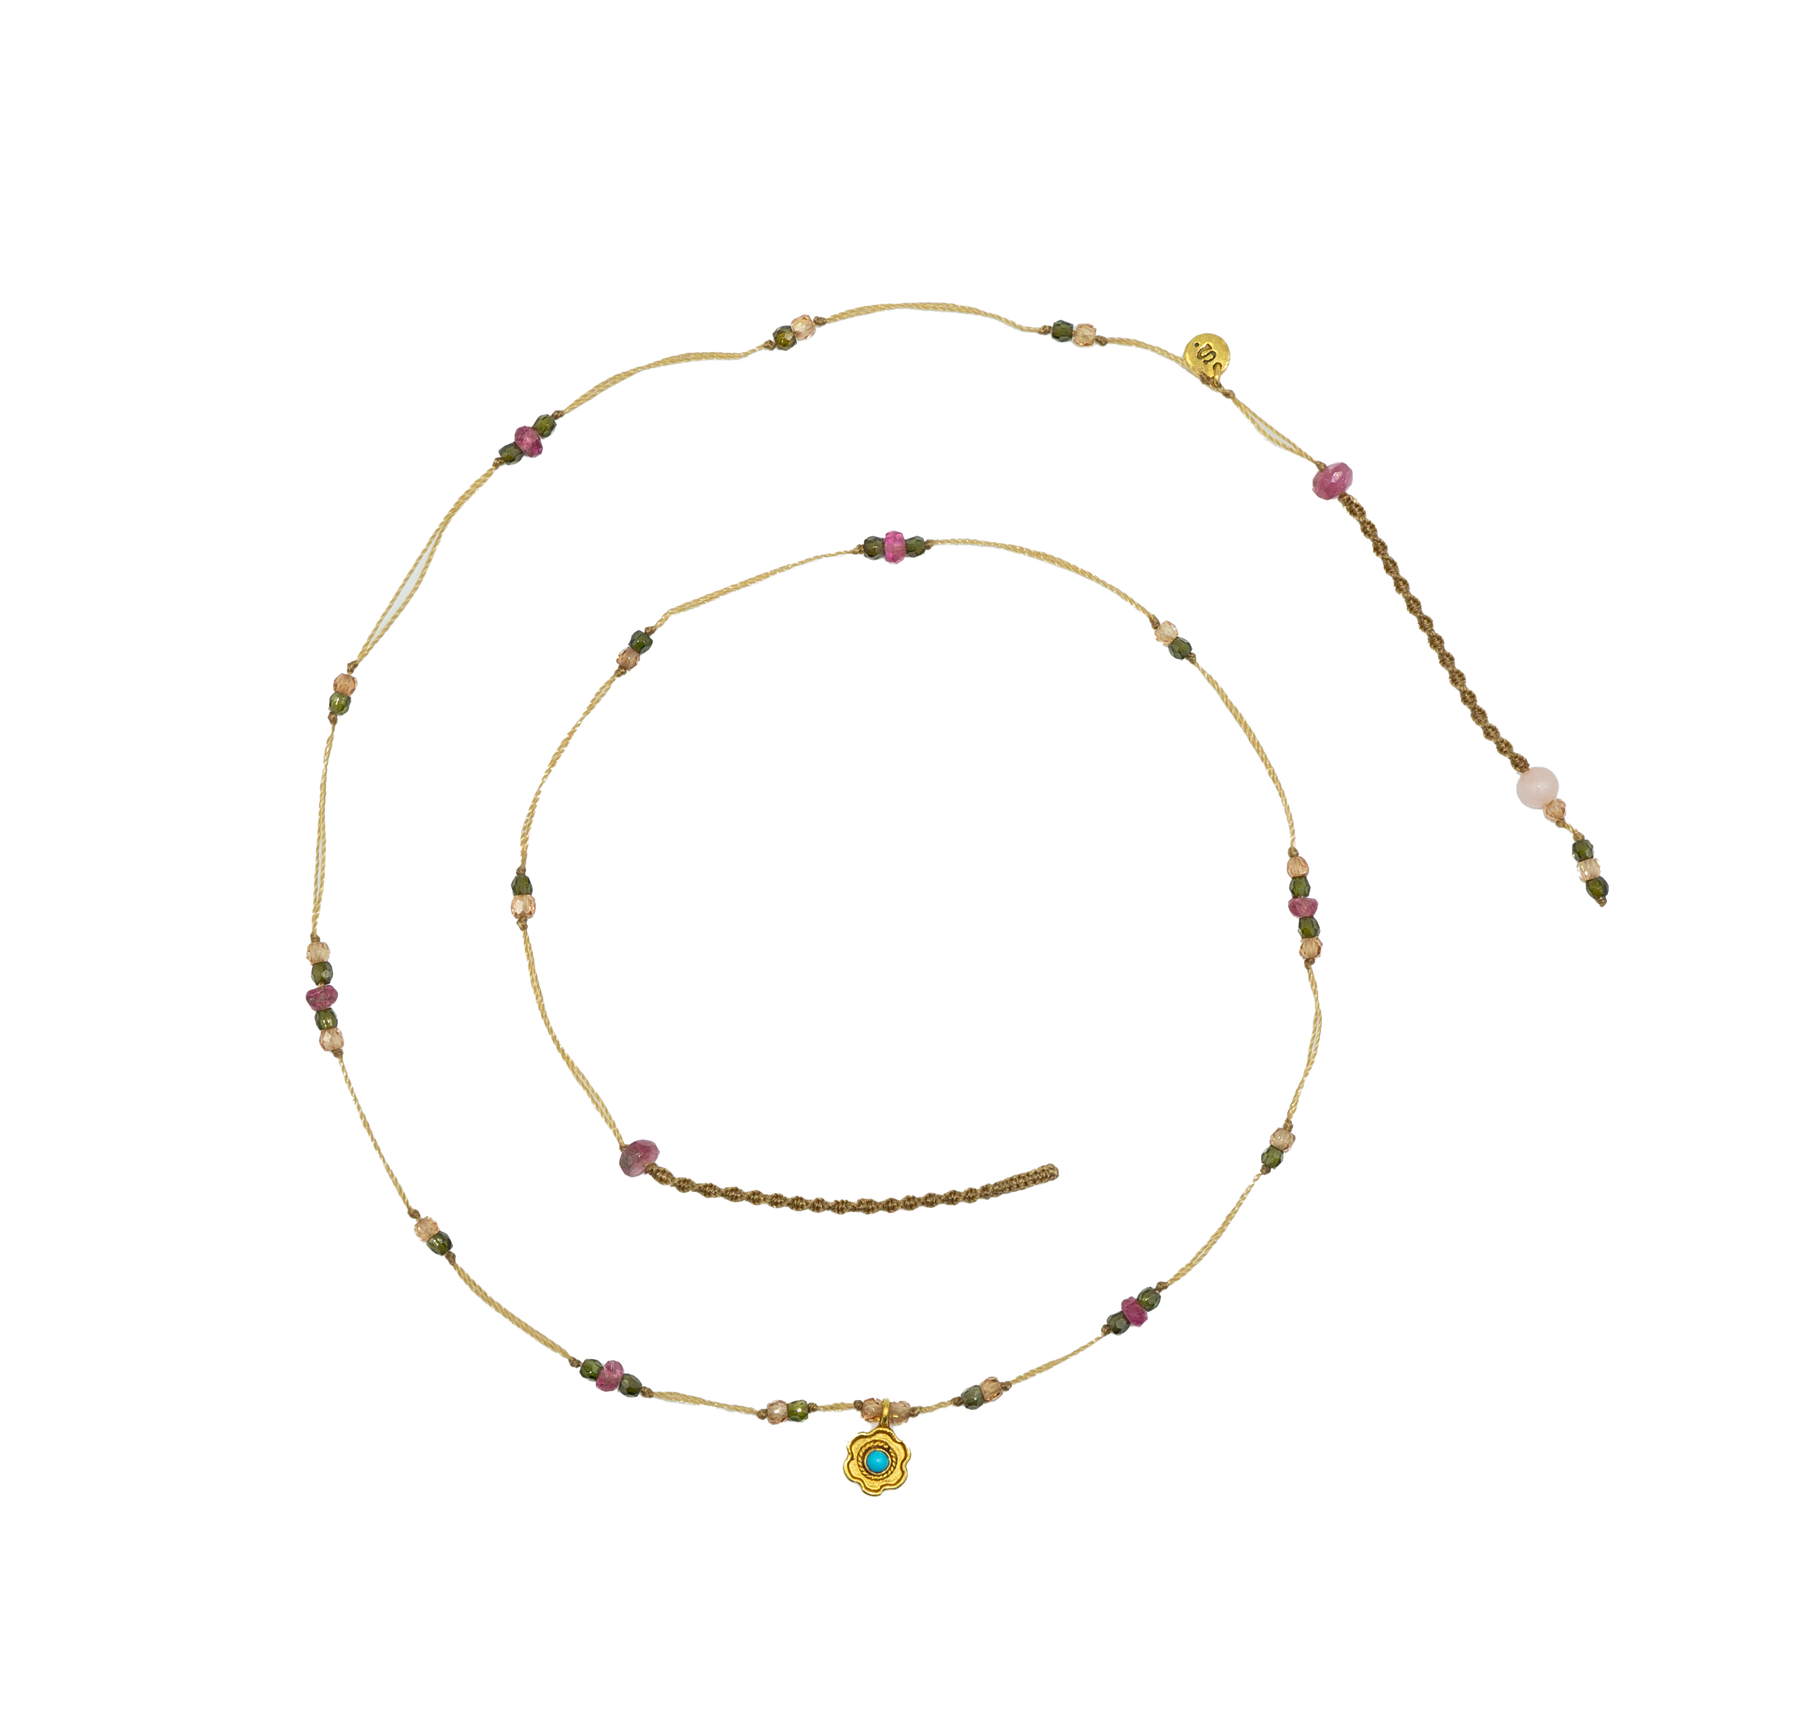 Goldie Flower Necklace - Turquoise - Mix Pink Tourmaline - Beige Thread